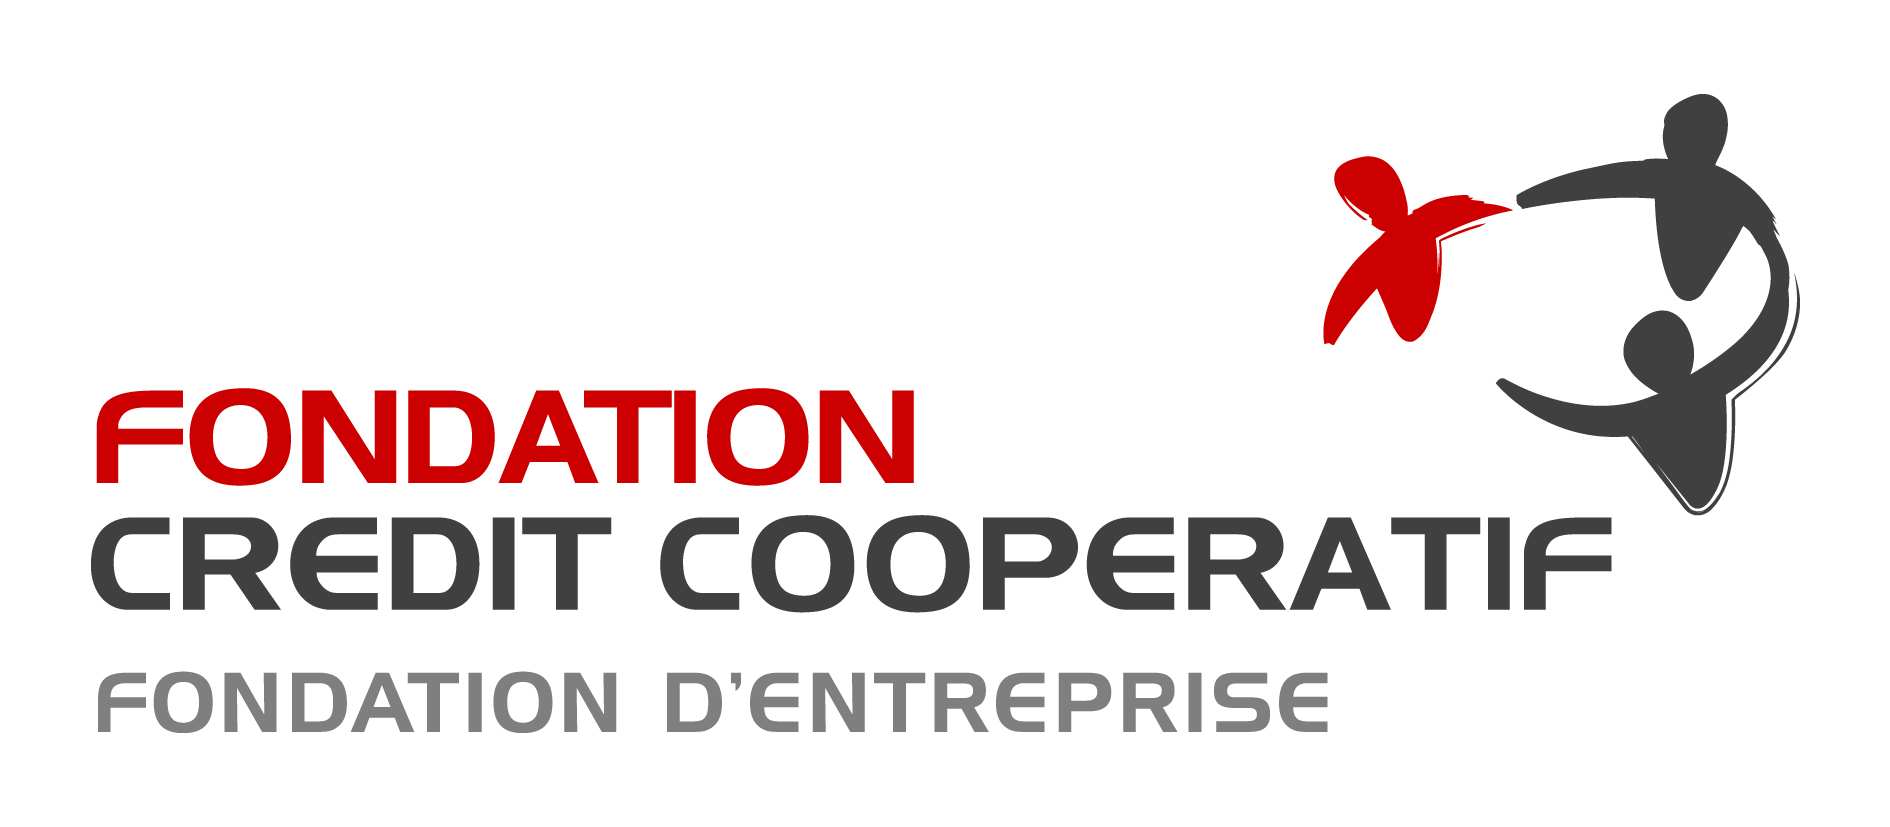 Fondation d'entreprise Crédit coopératif